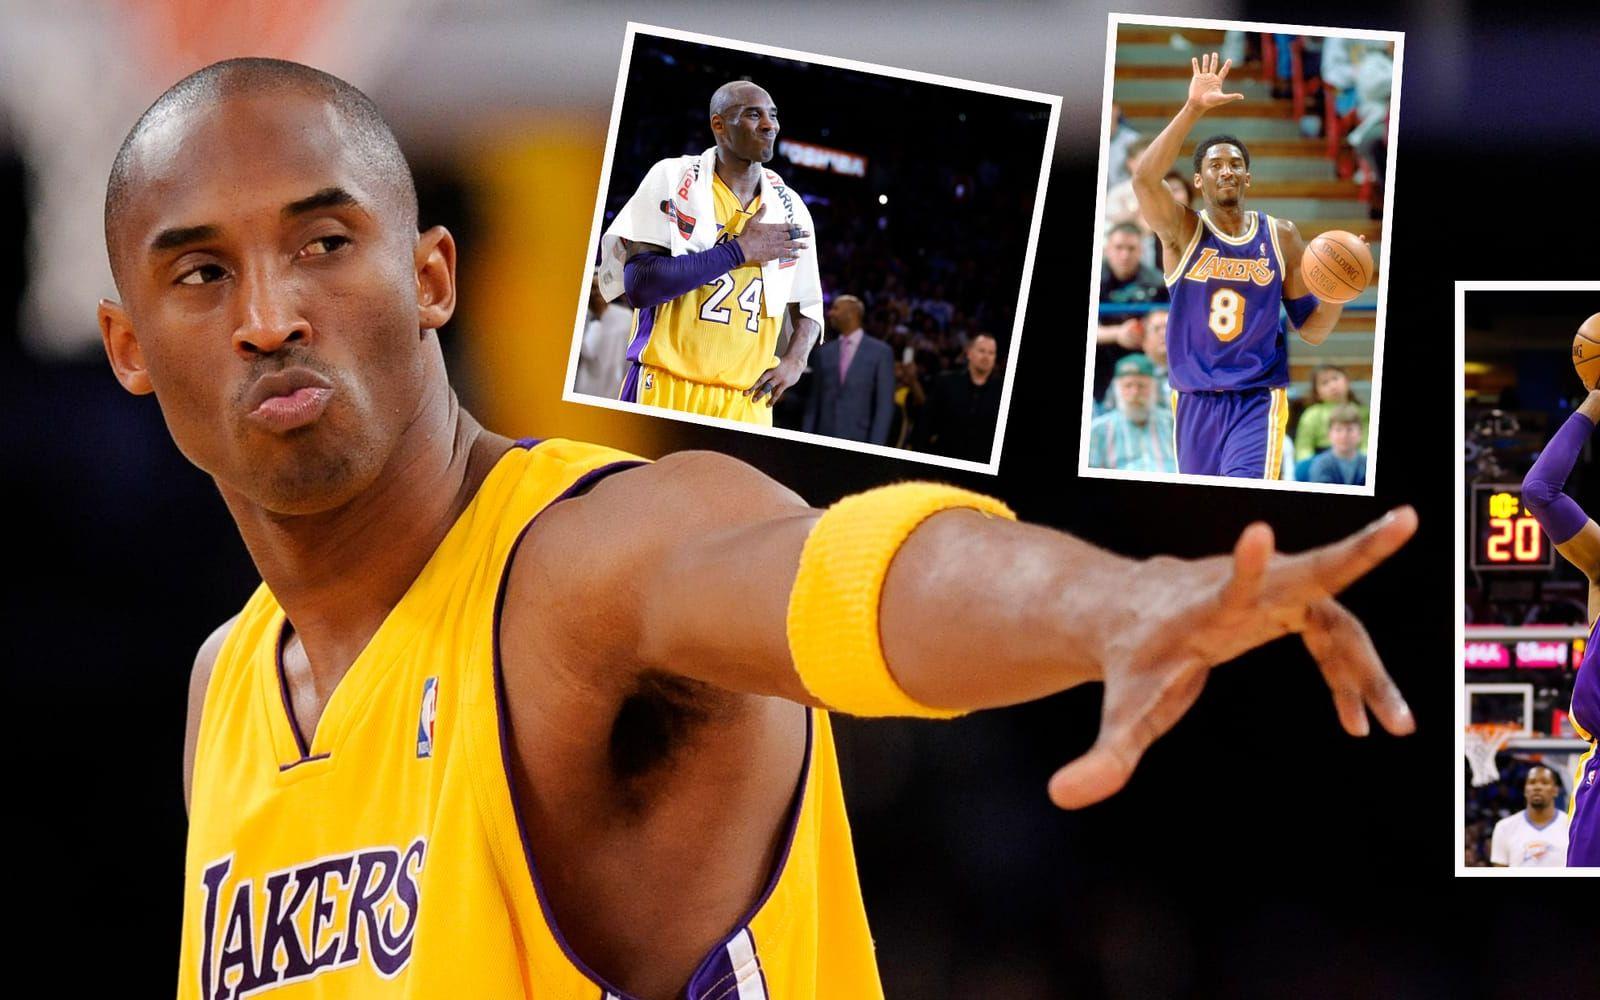 6. Kobe Bryant. 770 miljoner dollar. Los Angeles Lakers-legendaren är den som har tjänat mest, genom lön från sin klubb, inom lagsport genom tiderna. De sex sista åren på sitt kontrakt låg han i topp i NBA.Foto: Bildbyrån/TT